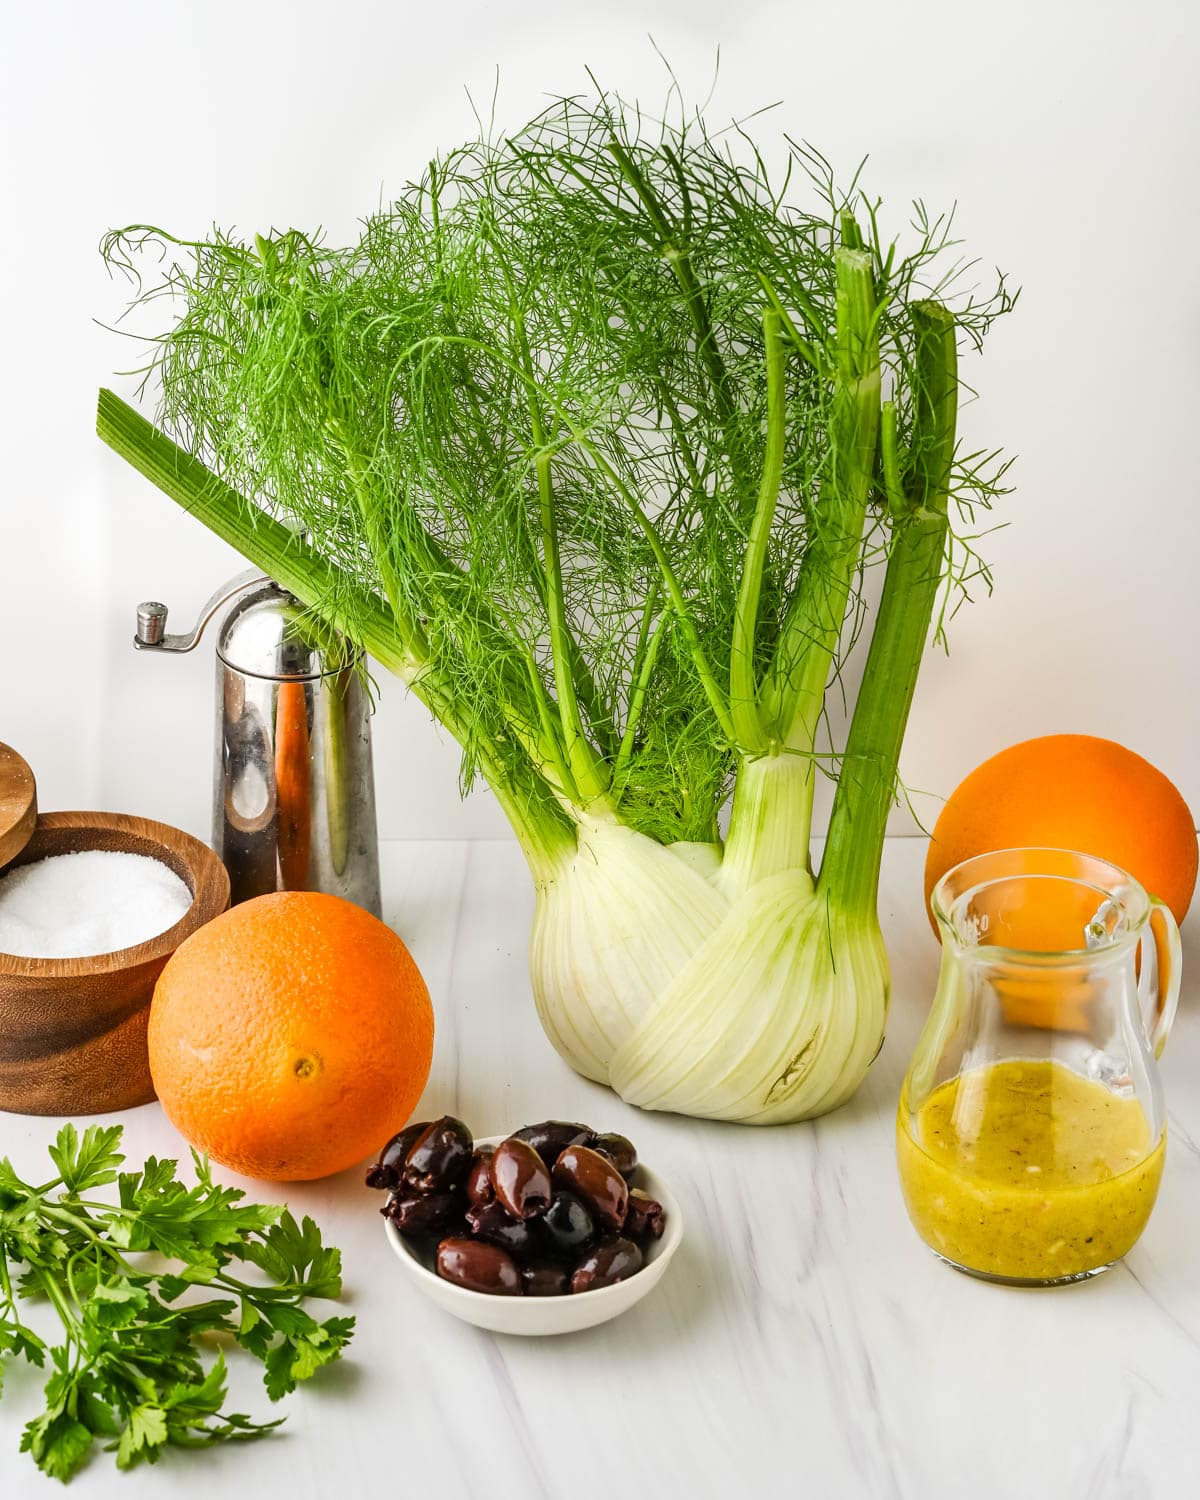 Ingredients for the orange fennel salad.